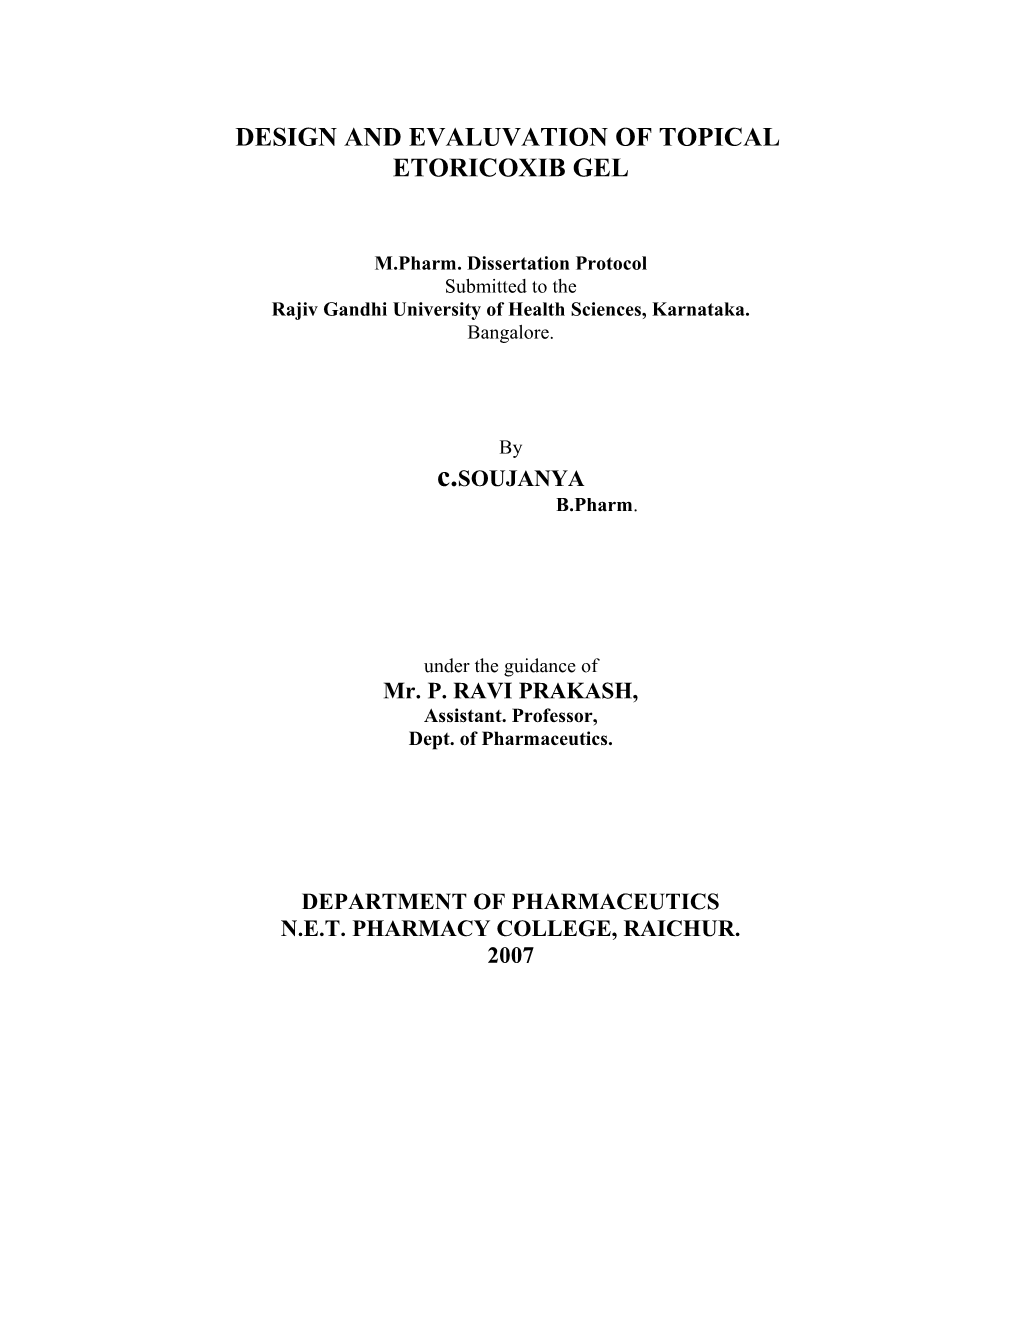 Formulation and Evaluation of Topical Etoricoxib Gel